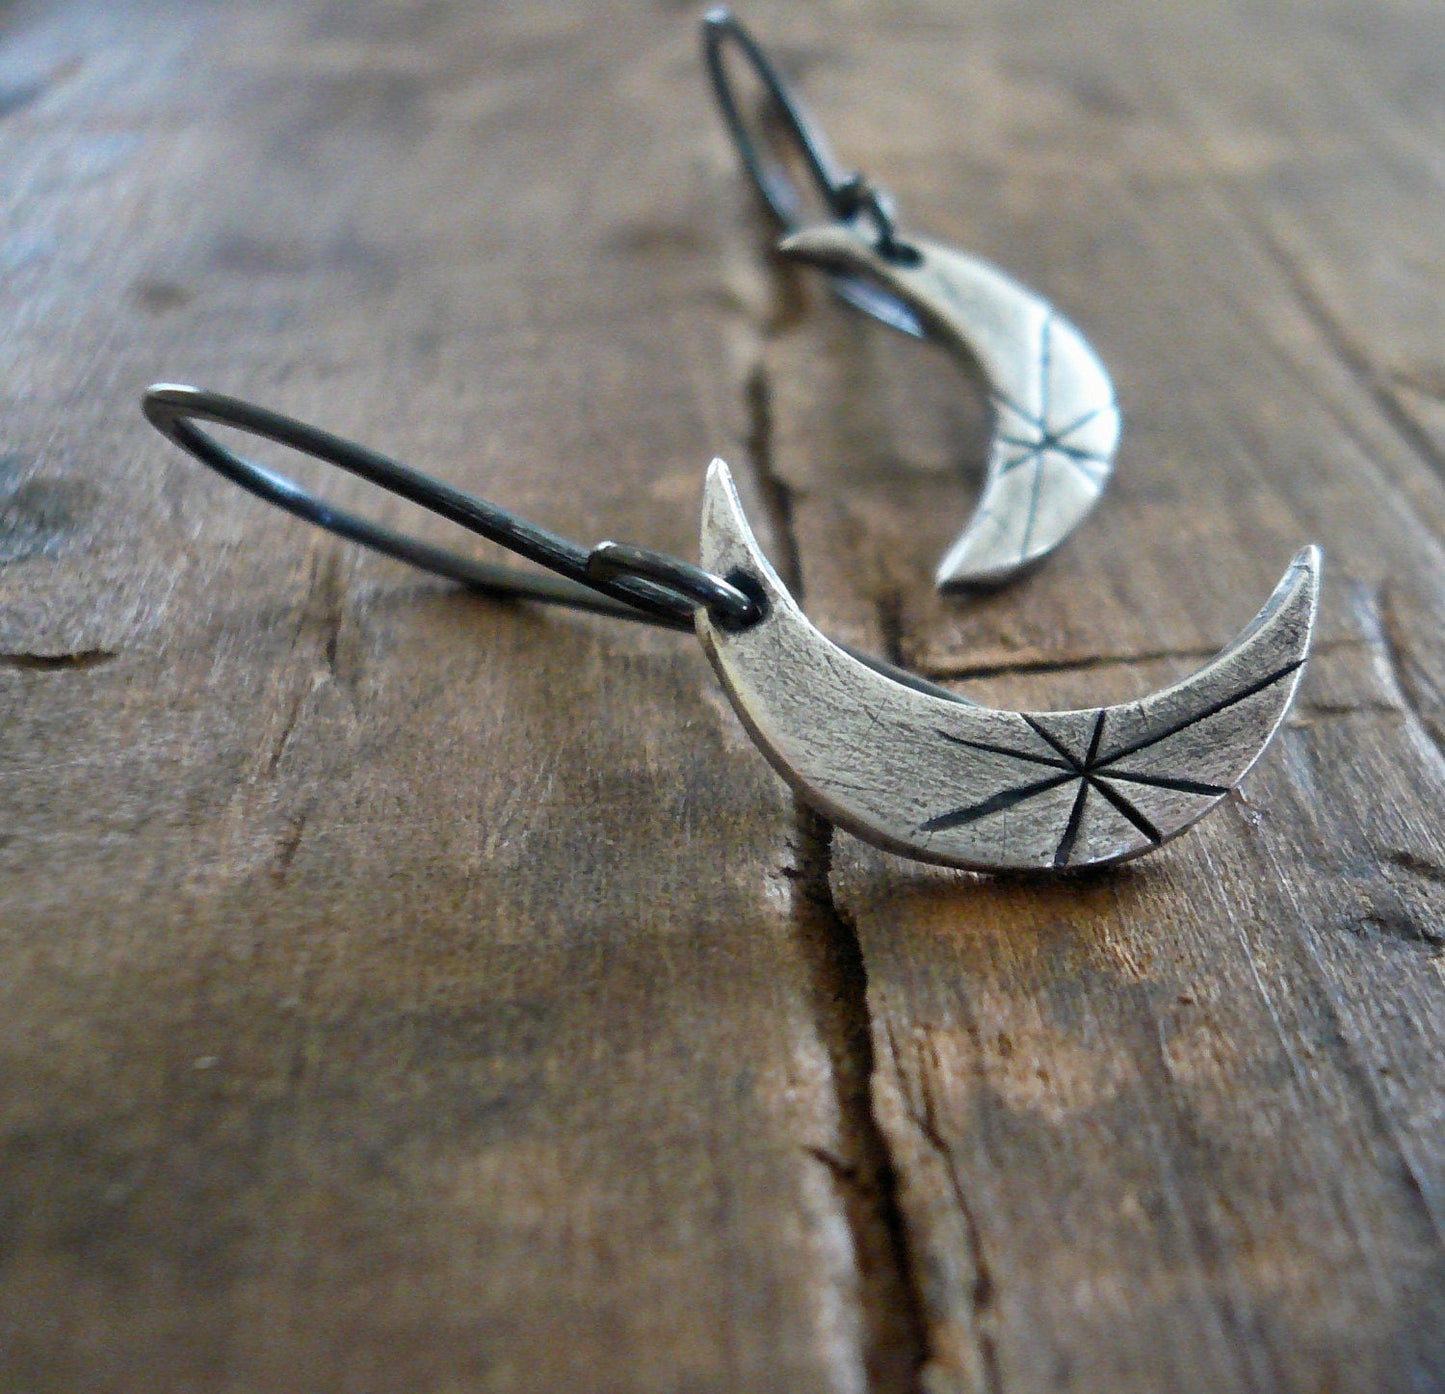 Luna Earrings - Handmade. Oxidized fine and sterling silver dangle earrings